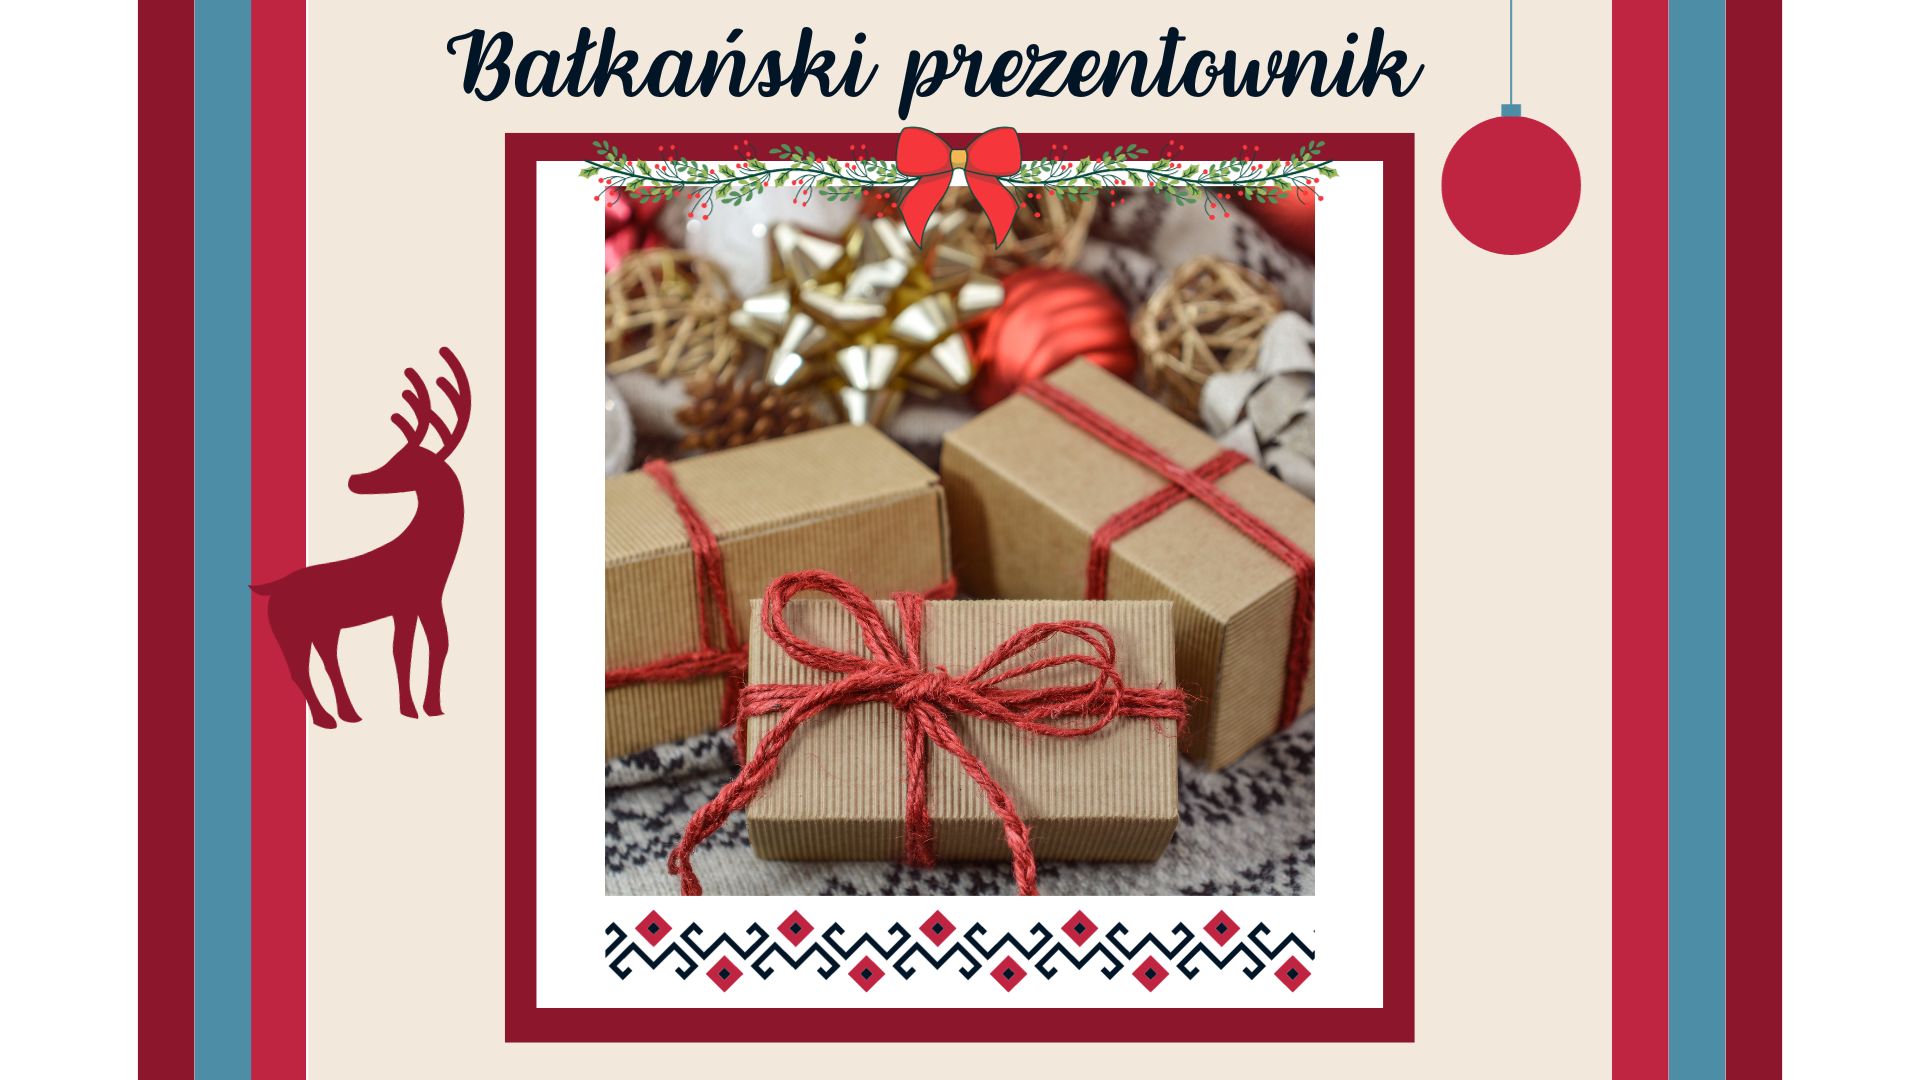 Bałkański prezentownik świąteczny